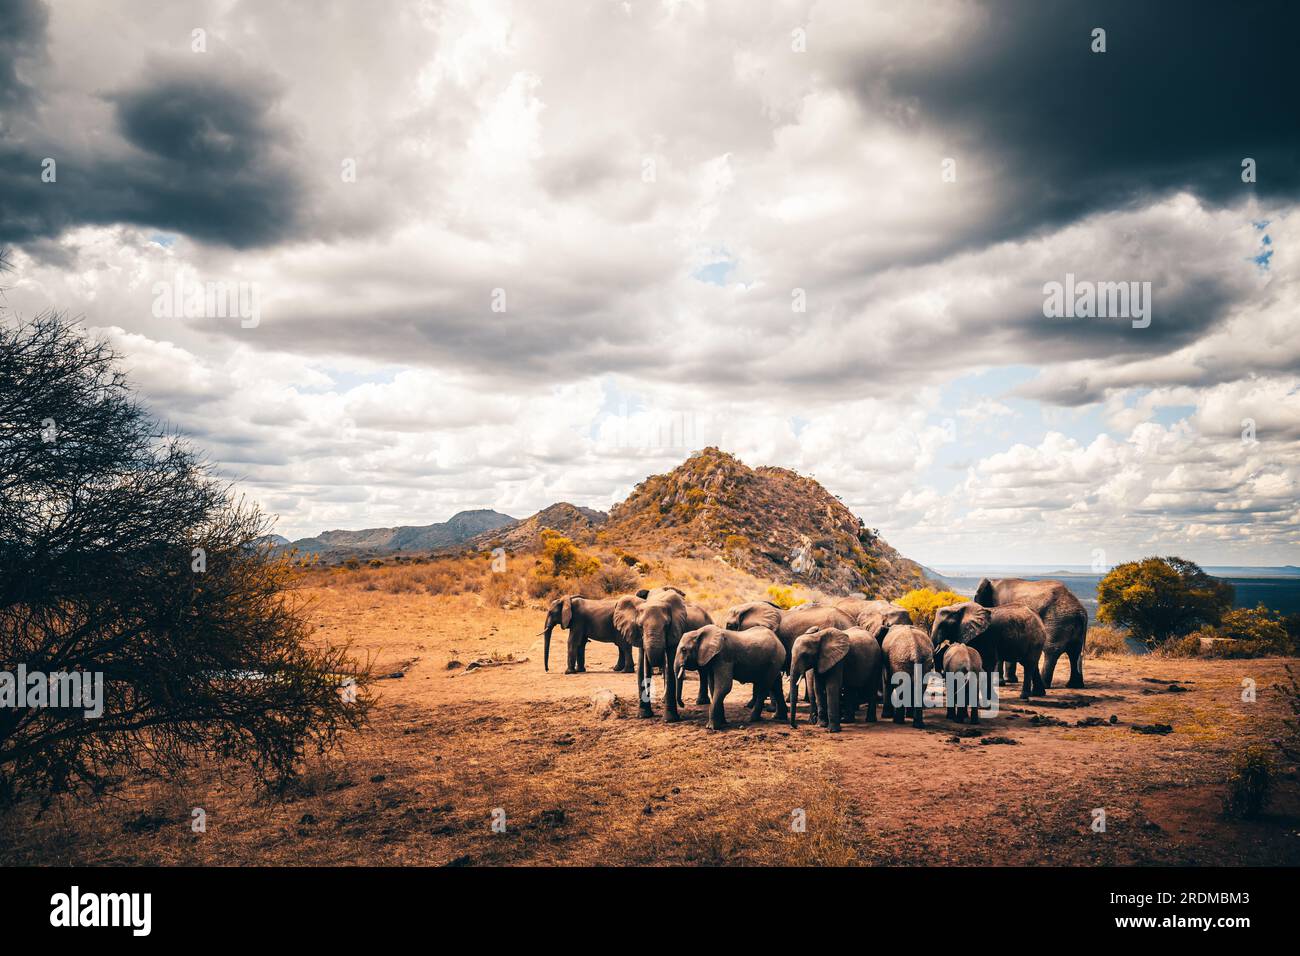 Elefante africano, Una mandria di elefanti si sposta nel successivo pozzo d'acqua nella savana del Kenya. Bellissimi animali fotografati durante un safari in acqua Foto Stock